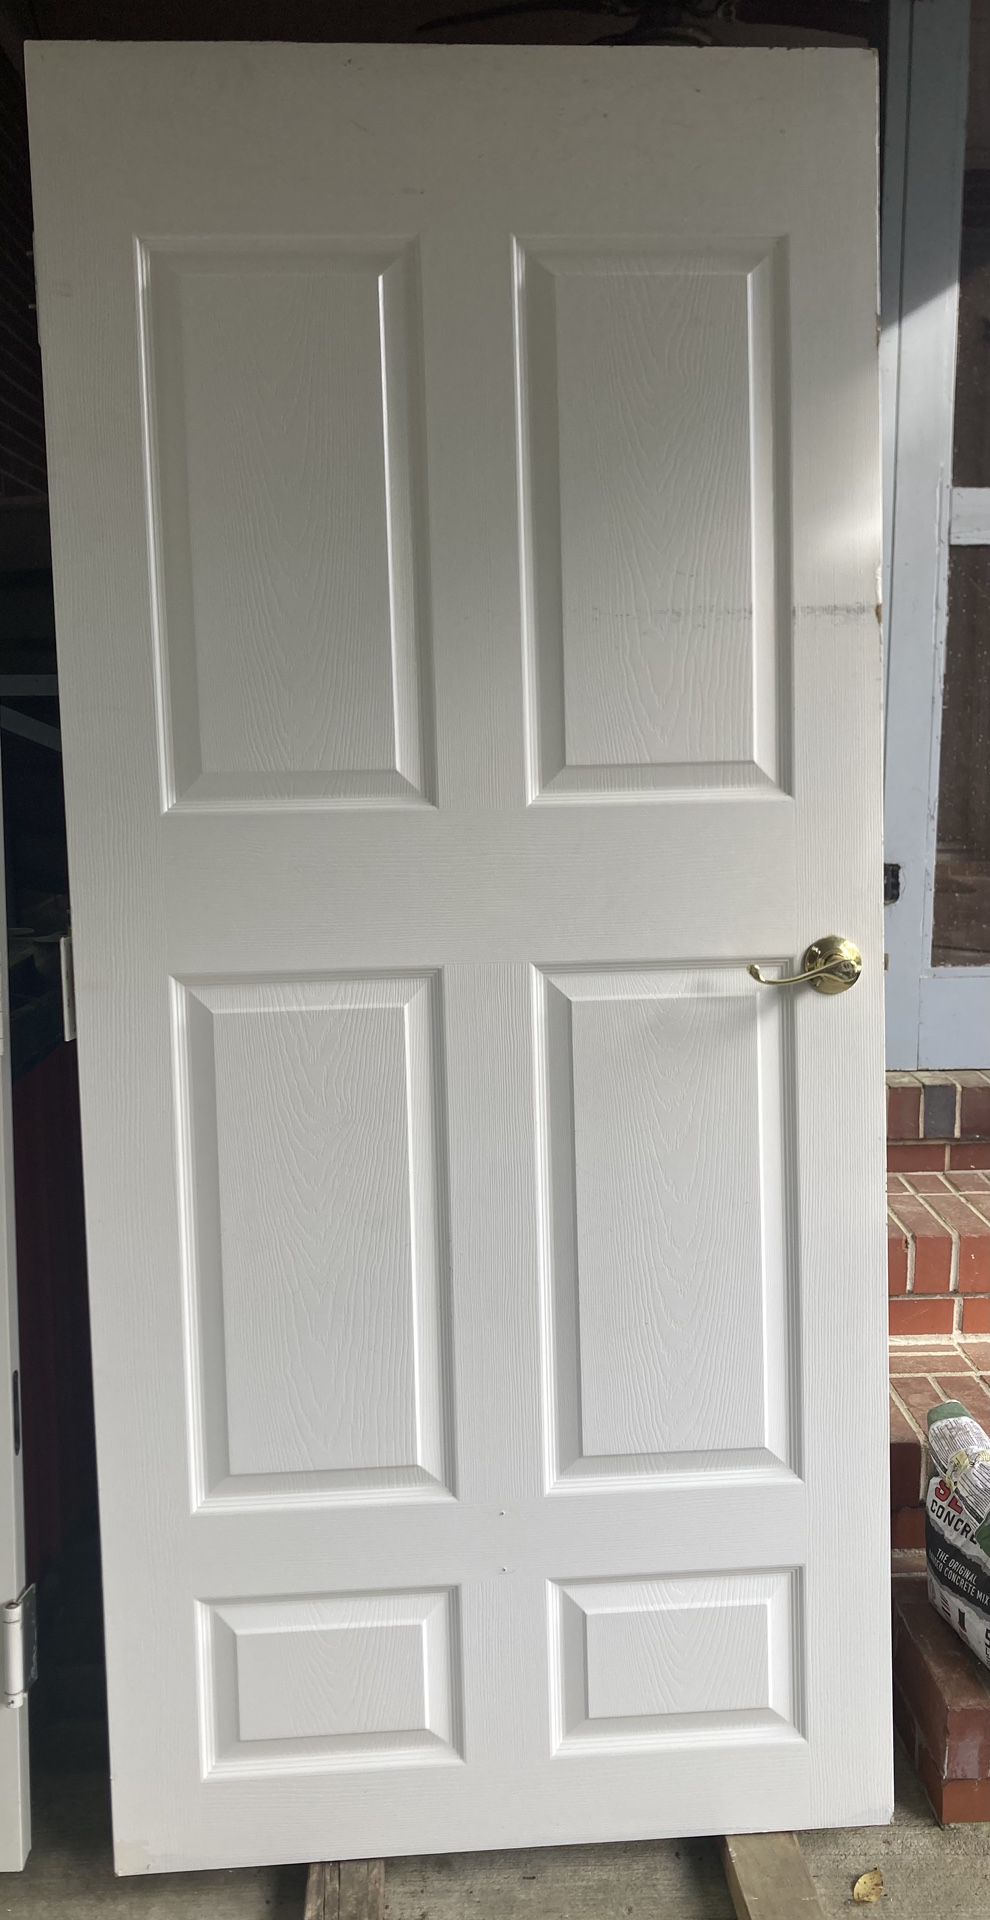 Solid Core White 6 Panel Door. door size is 35 3/4 in. x 80 in